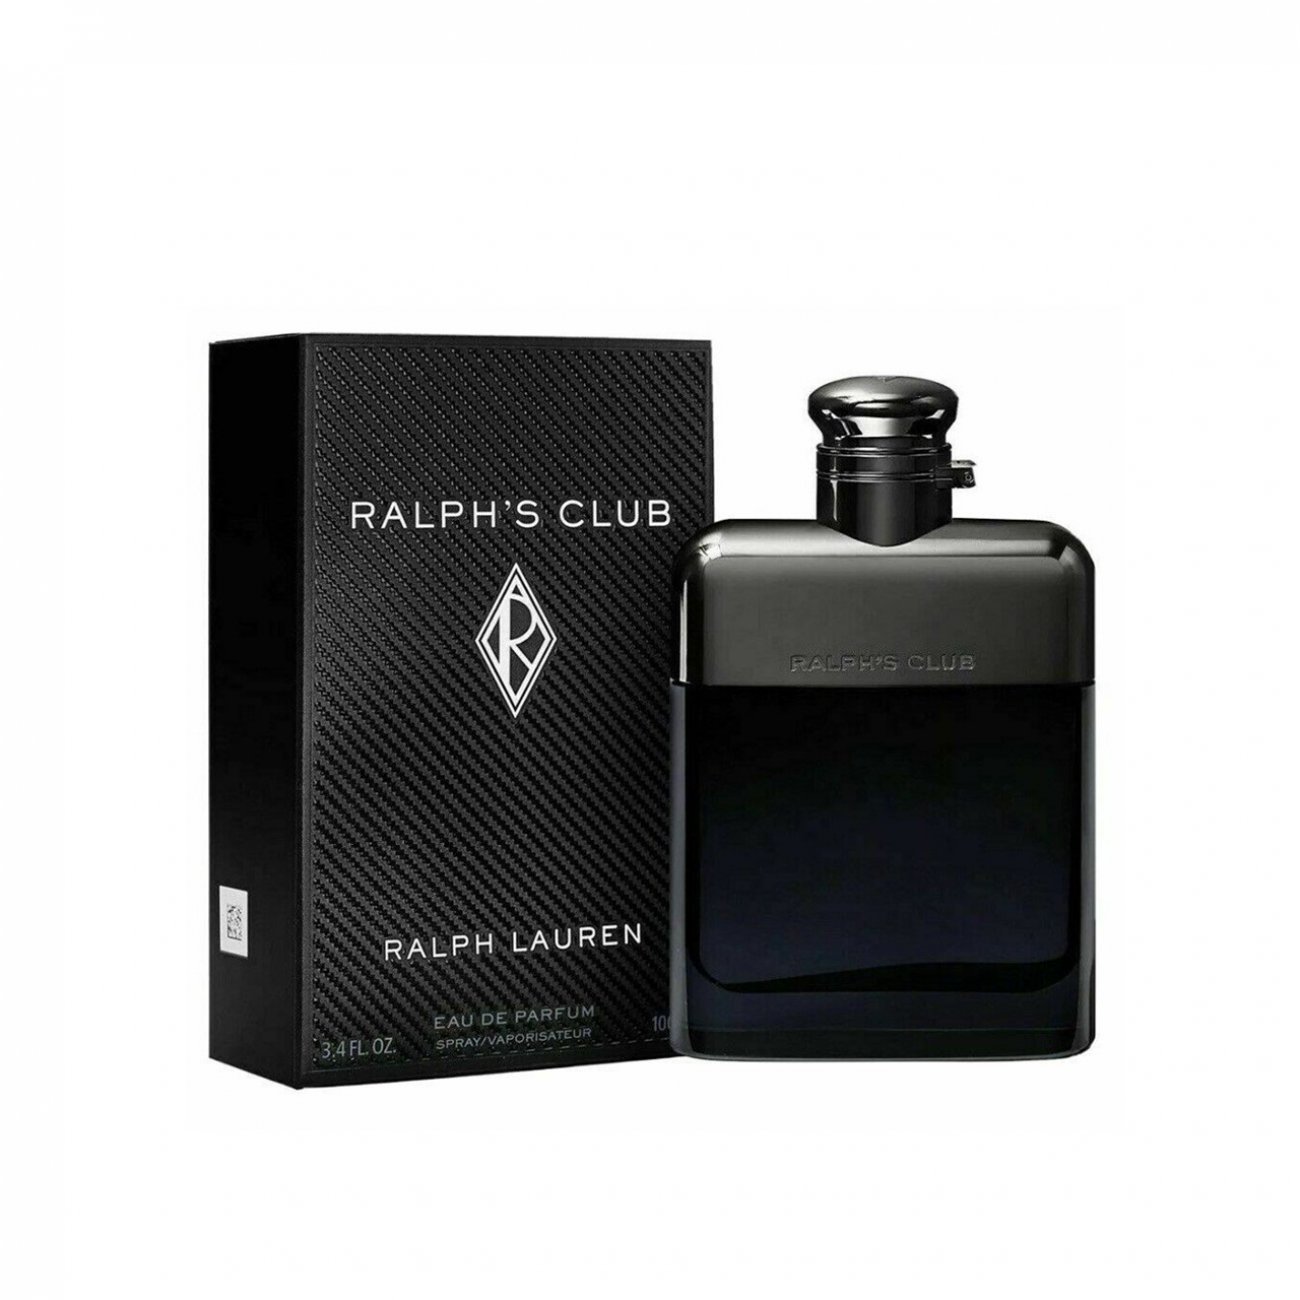 Buy Ralph Lauren Ralph's Club Eau de Parfum For Men · Germany